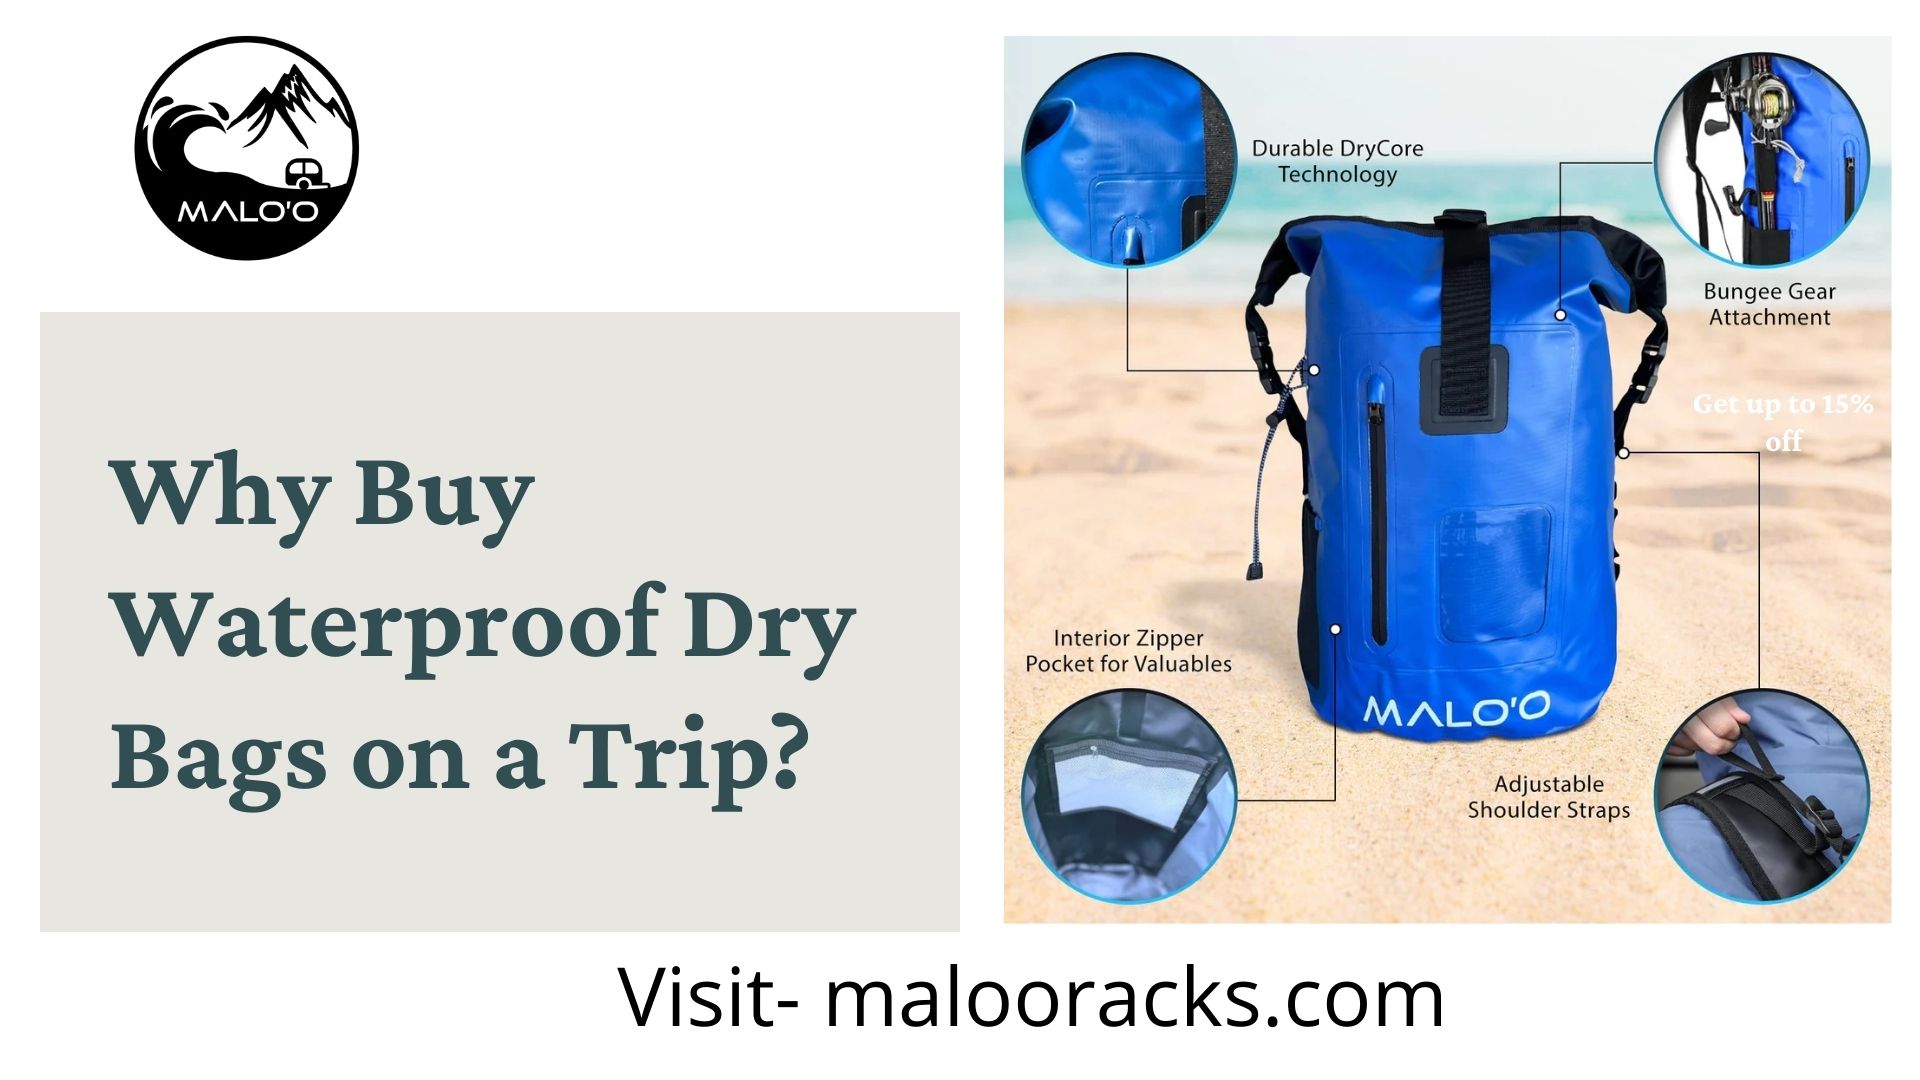 Why Buy Waterproof Dry Bags on a Trip?